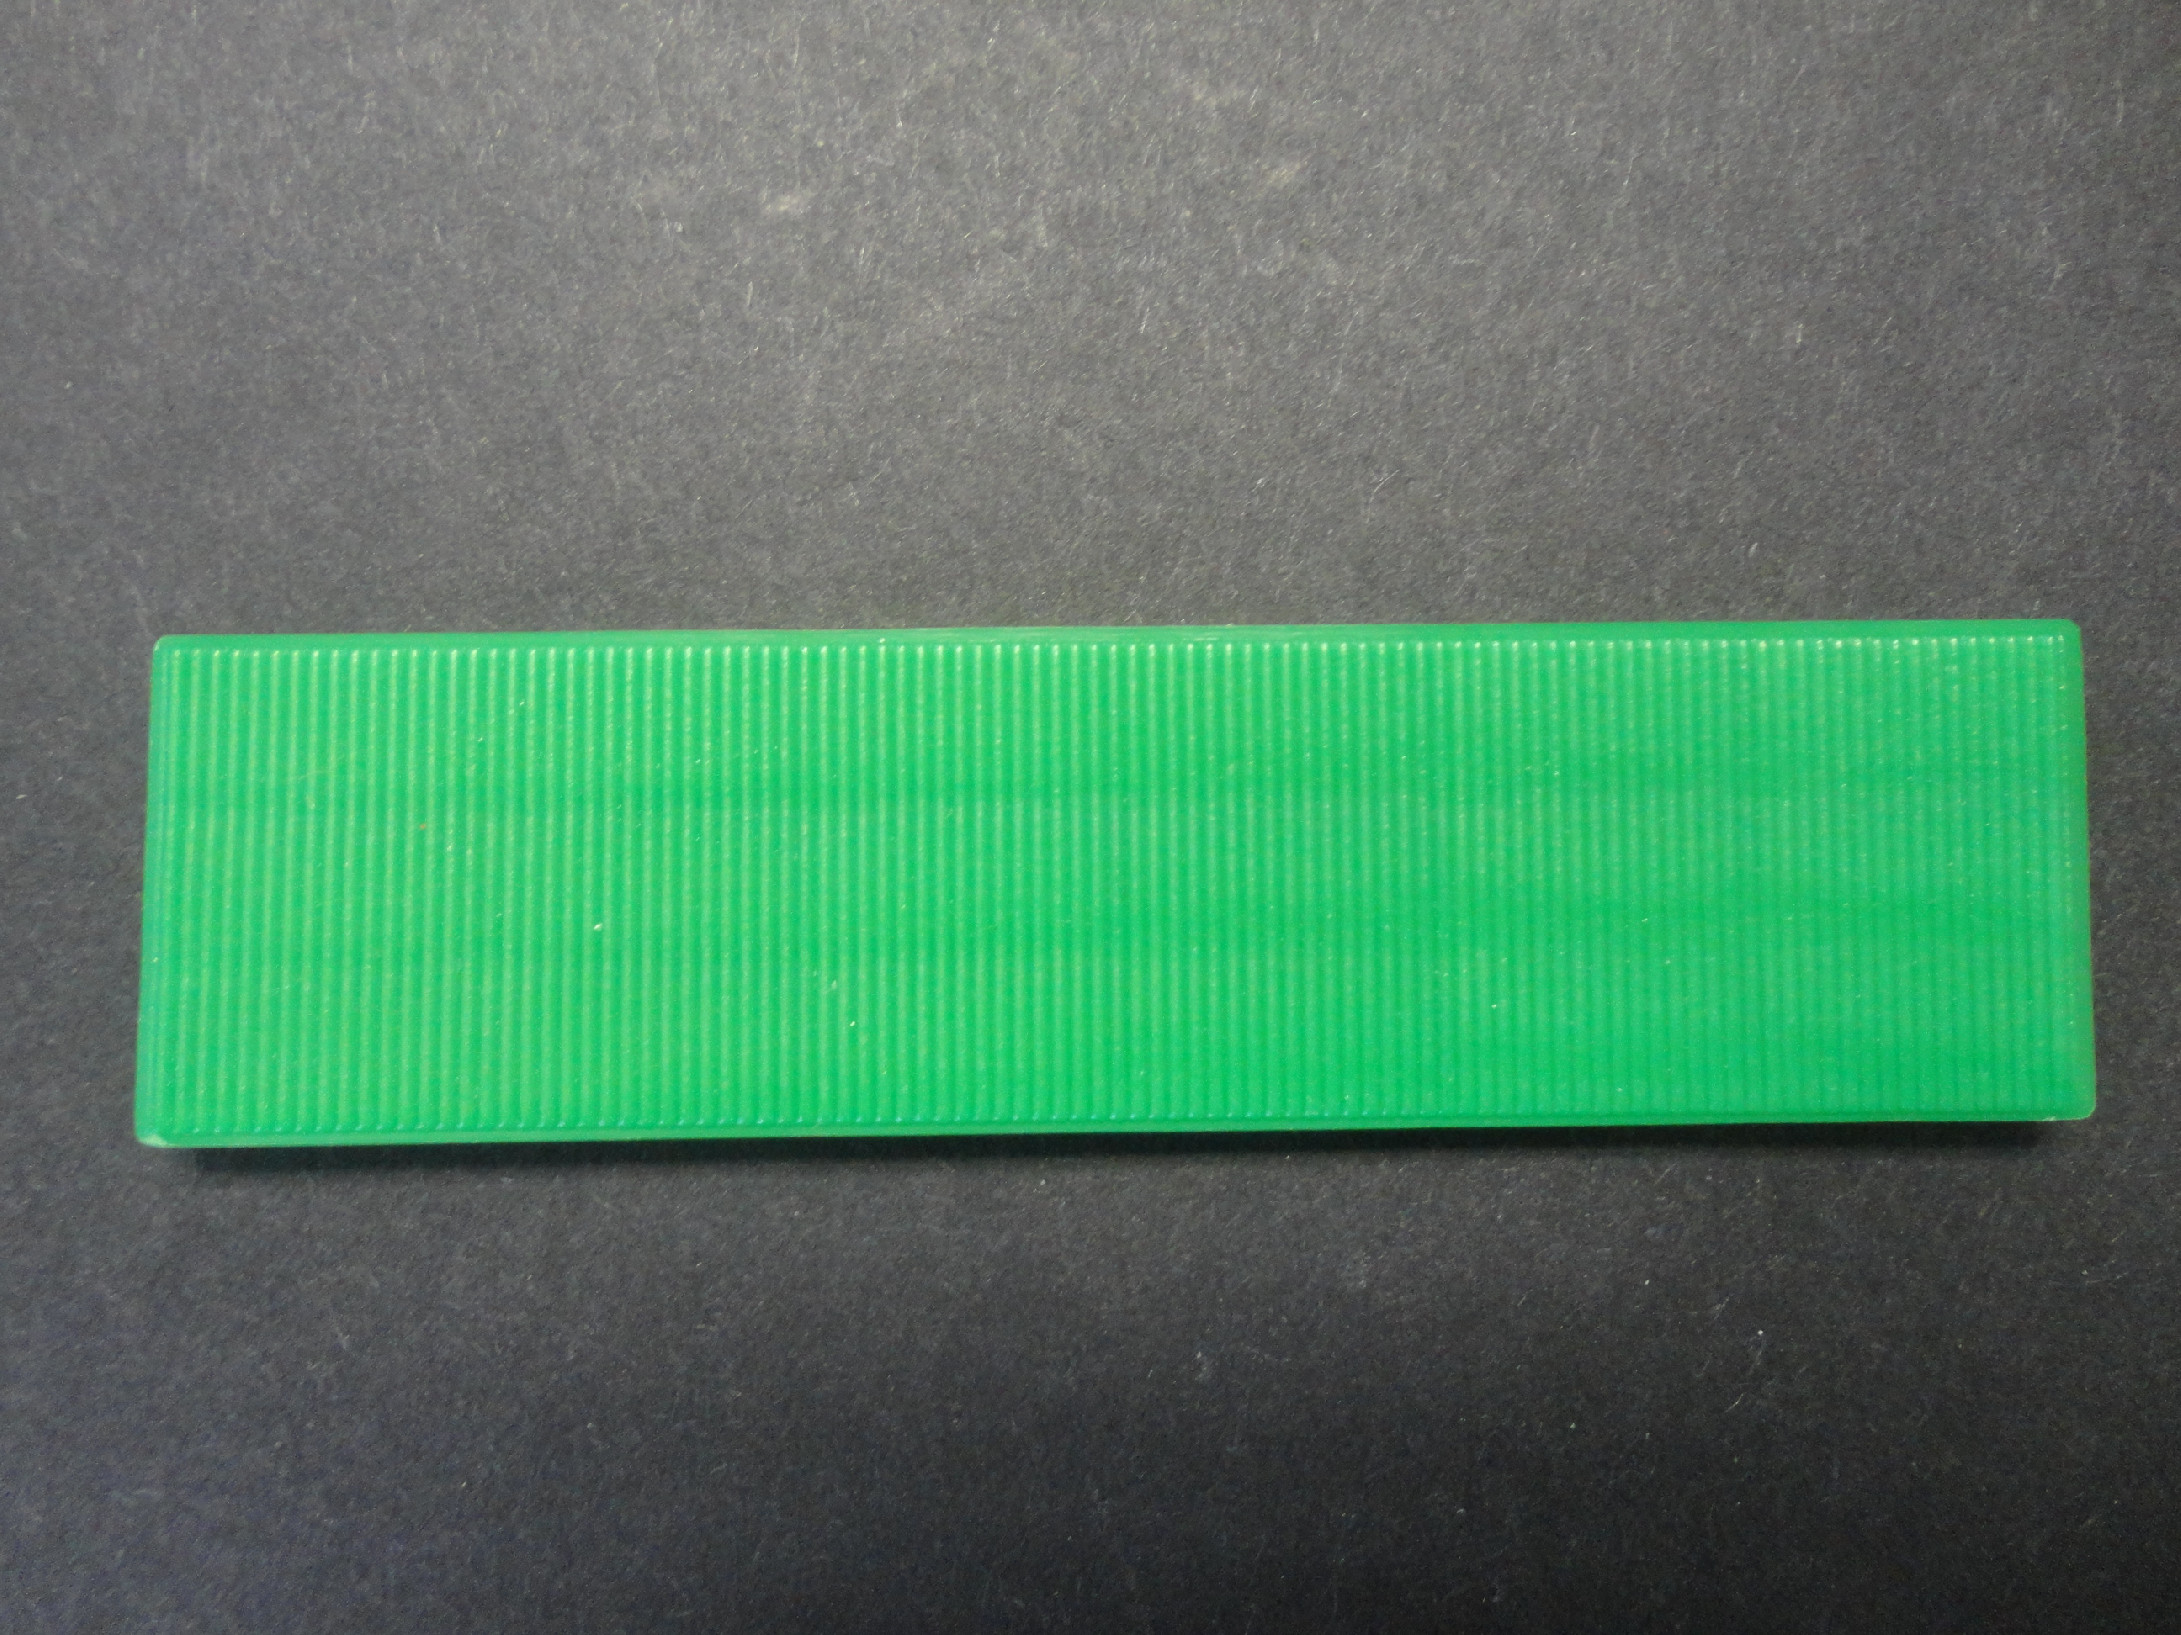 Vymezovací plastová podložka Barva: Zelená, Rozměr: 26mm x 100mm, Tloušťka: 4mm